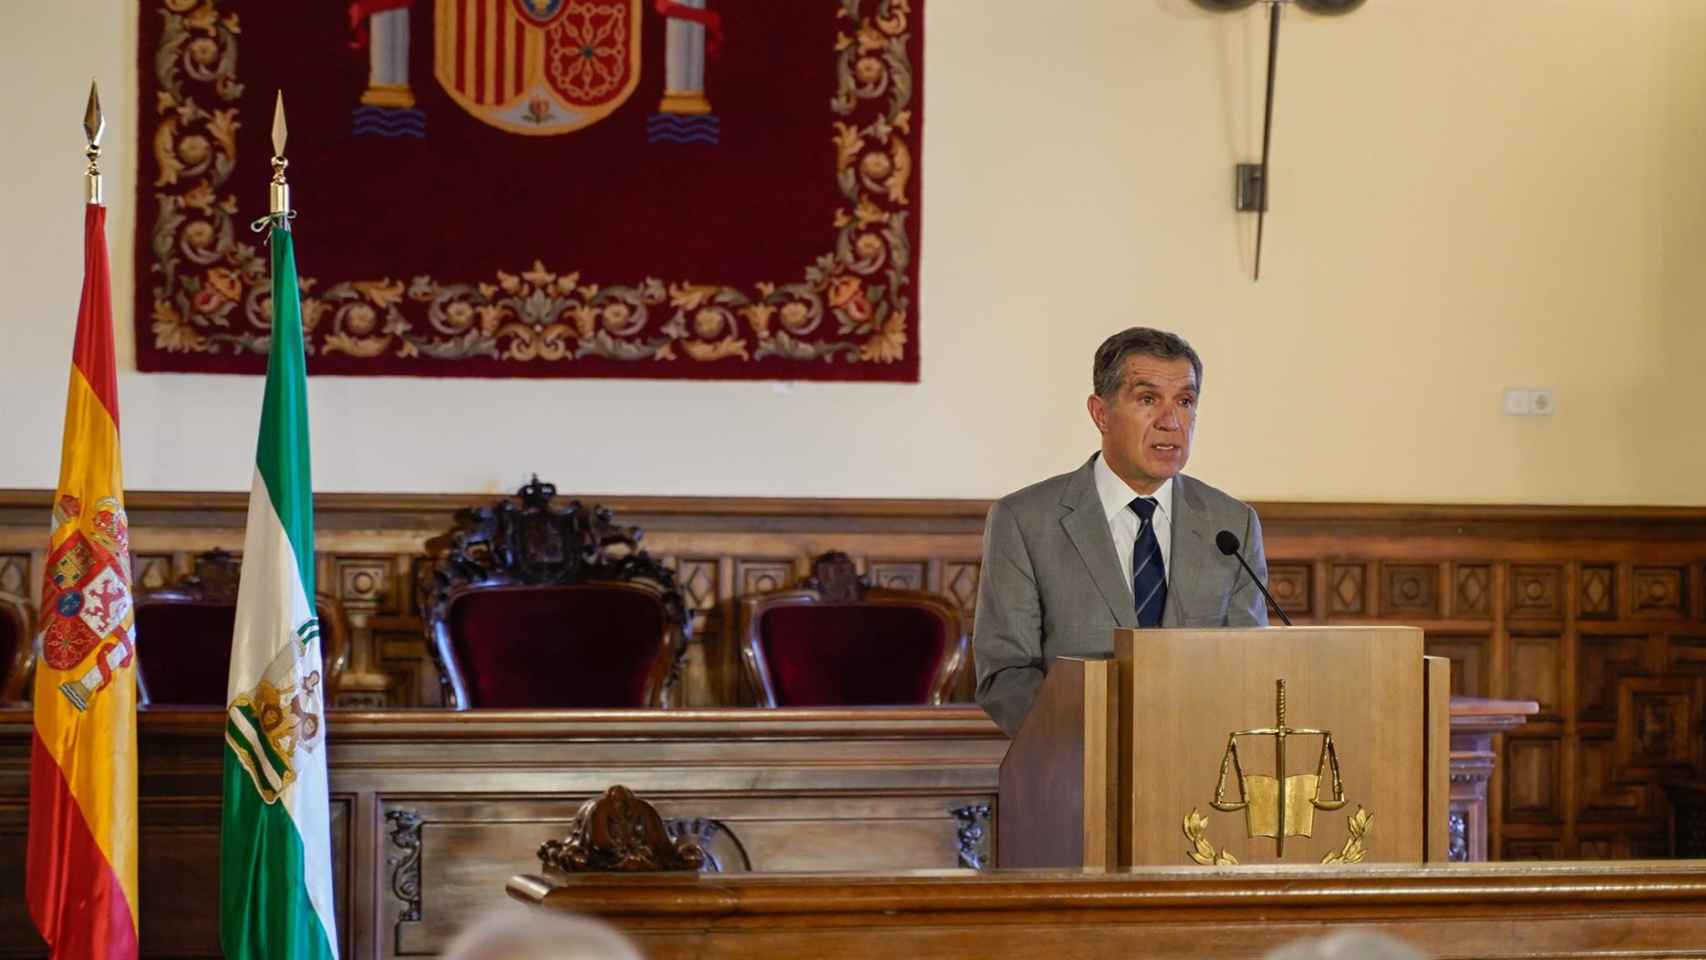 El presidente del Tribunal Superior de Justicia de Andalucía, Lorenzo del Río, durante el encuentro anual de presidentes de tribunales superiores de Justicia de España.